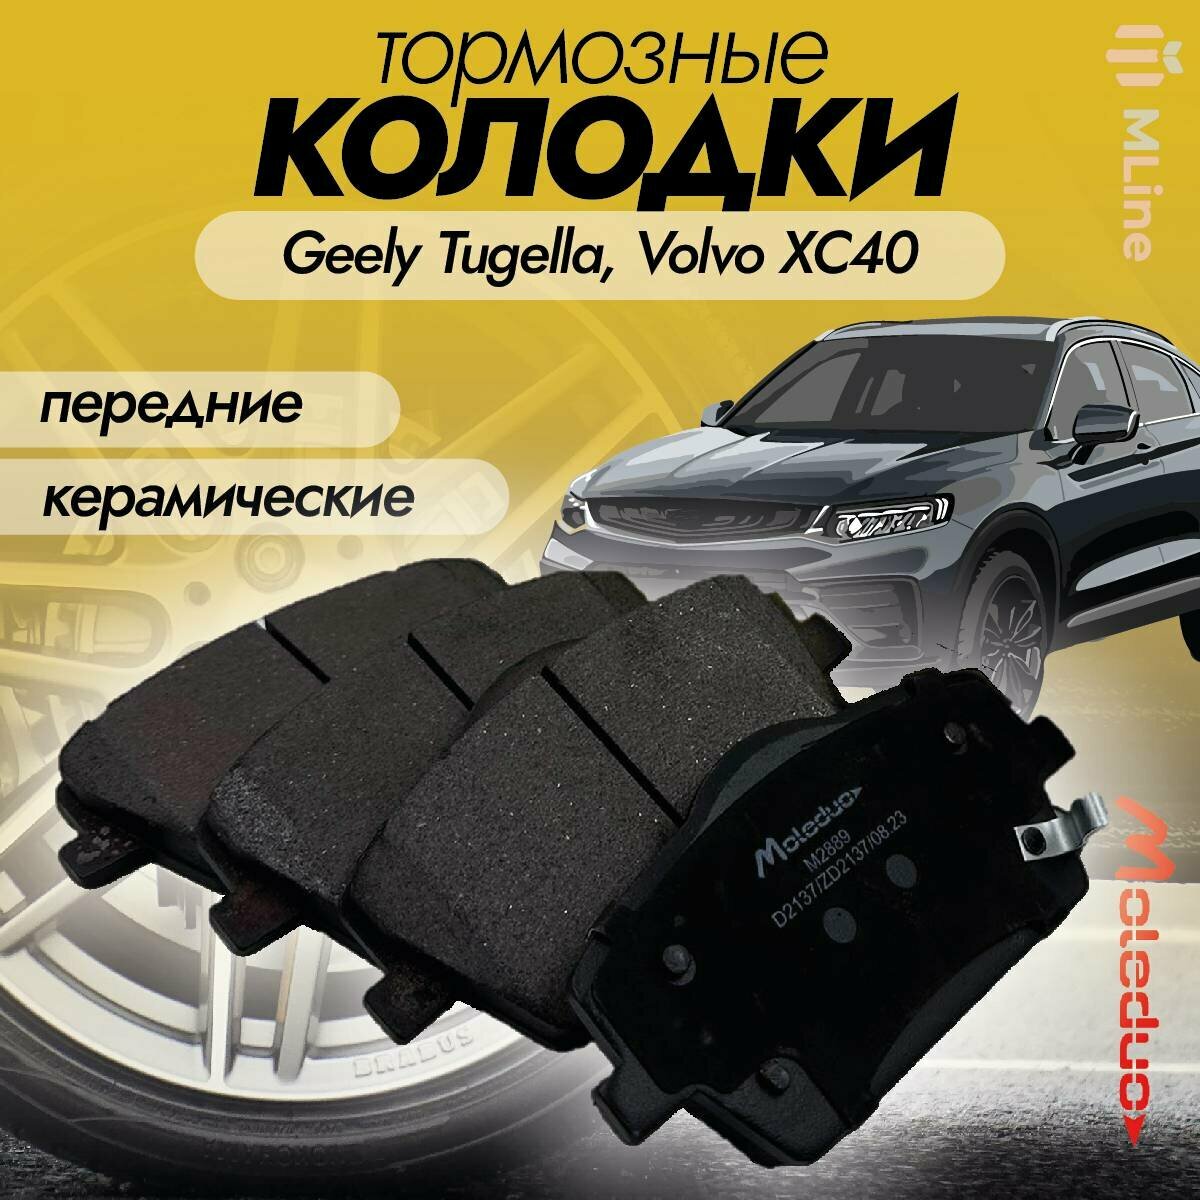 Колодки тормозные передние керамические Moleduo M2889 для Geely Tugella, Volvo XC40